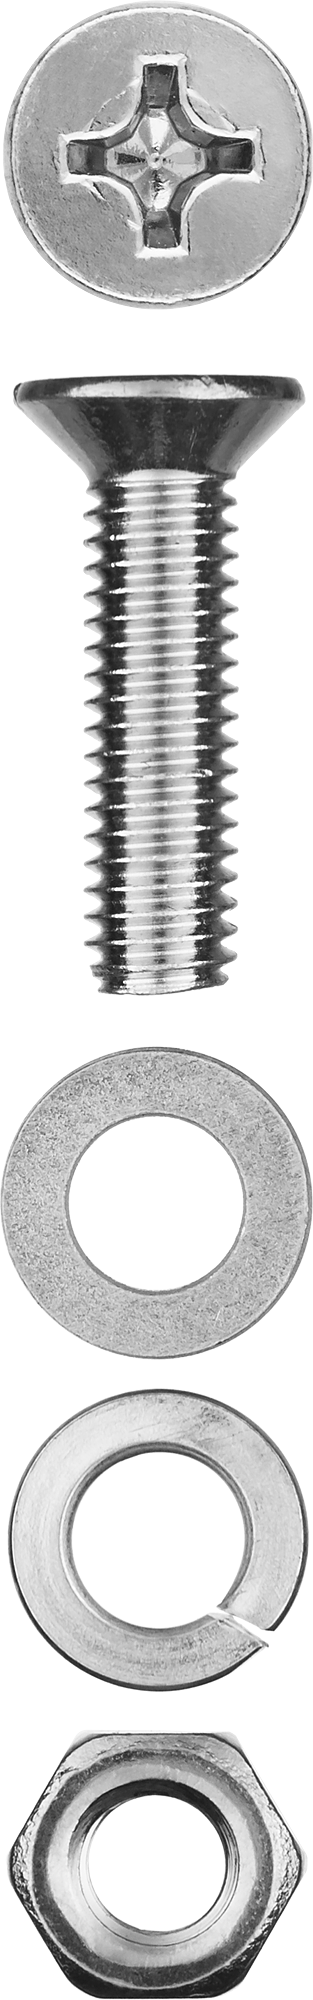 Винт (DIN965) с потайной головкой в комплекте с гайкой (DIN934), шайбой (DIN125), шайбой пруж. (DIN127) Зубр 303456-06-030, М6, 3 см, 965 DIN, 6 мм, оцинкованная сталь, 10 шт., фасовка (303456-06-030)